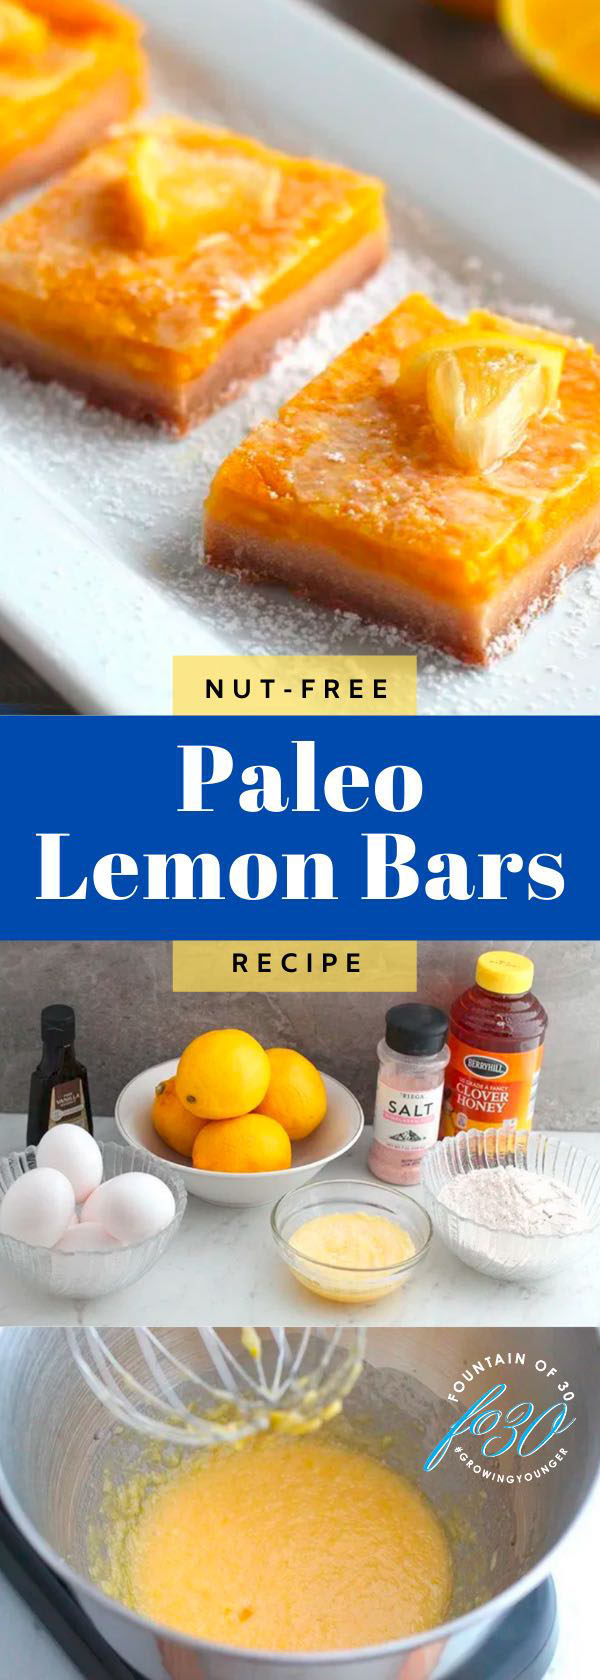 nut free paleo lemon bars recipe fountainof30